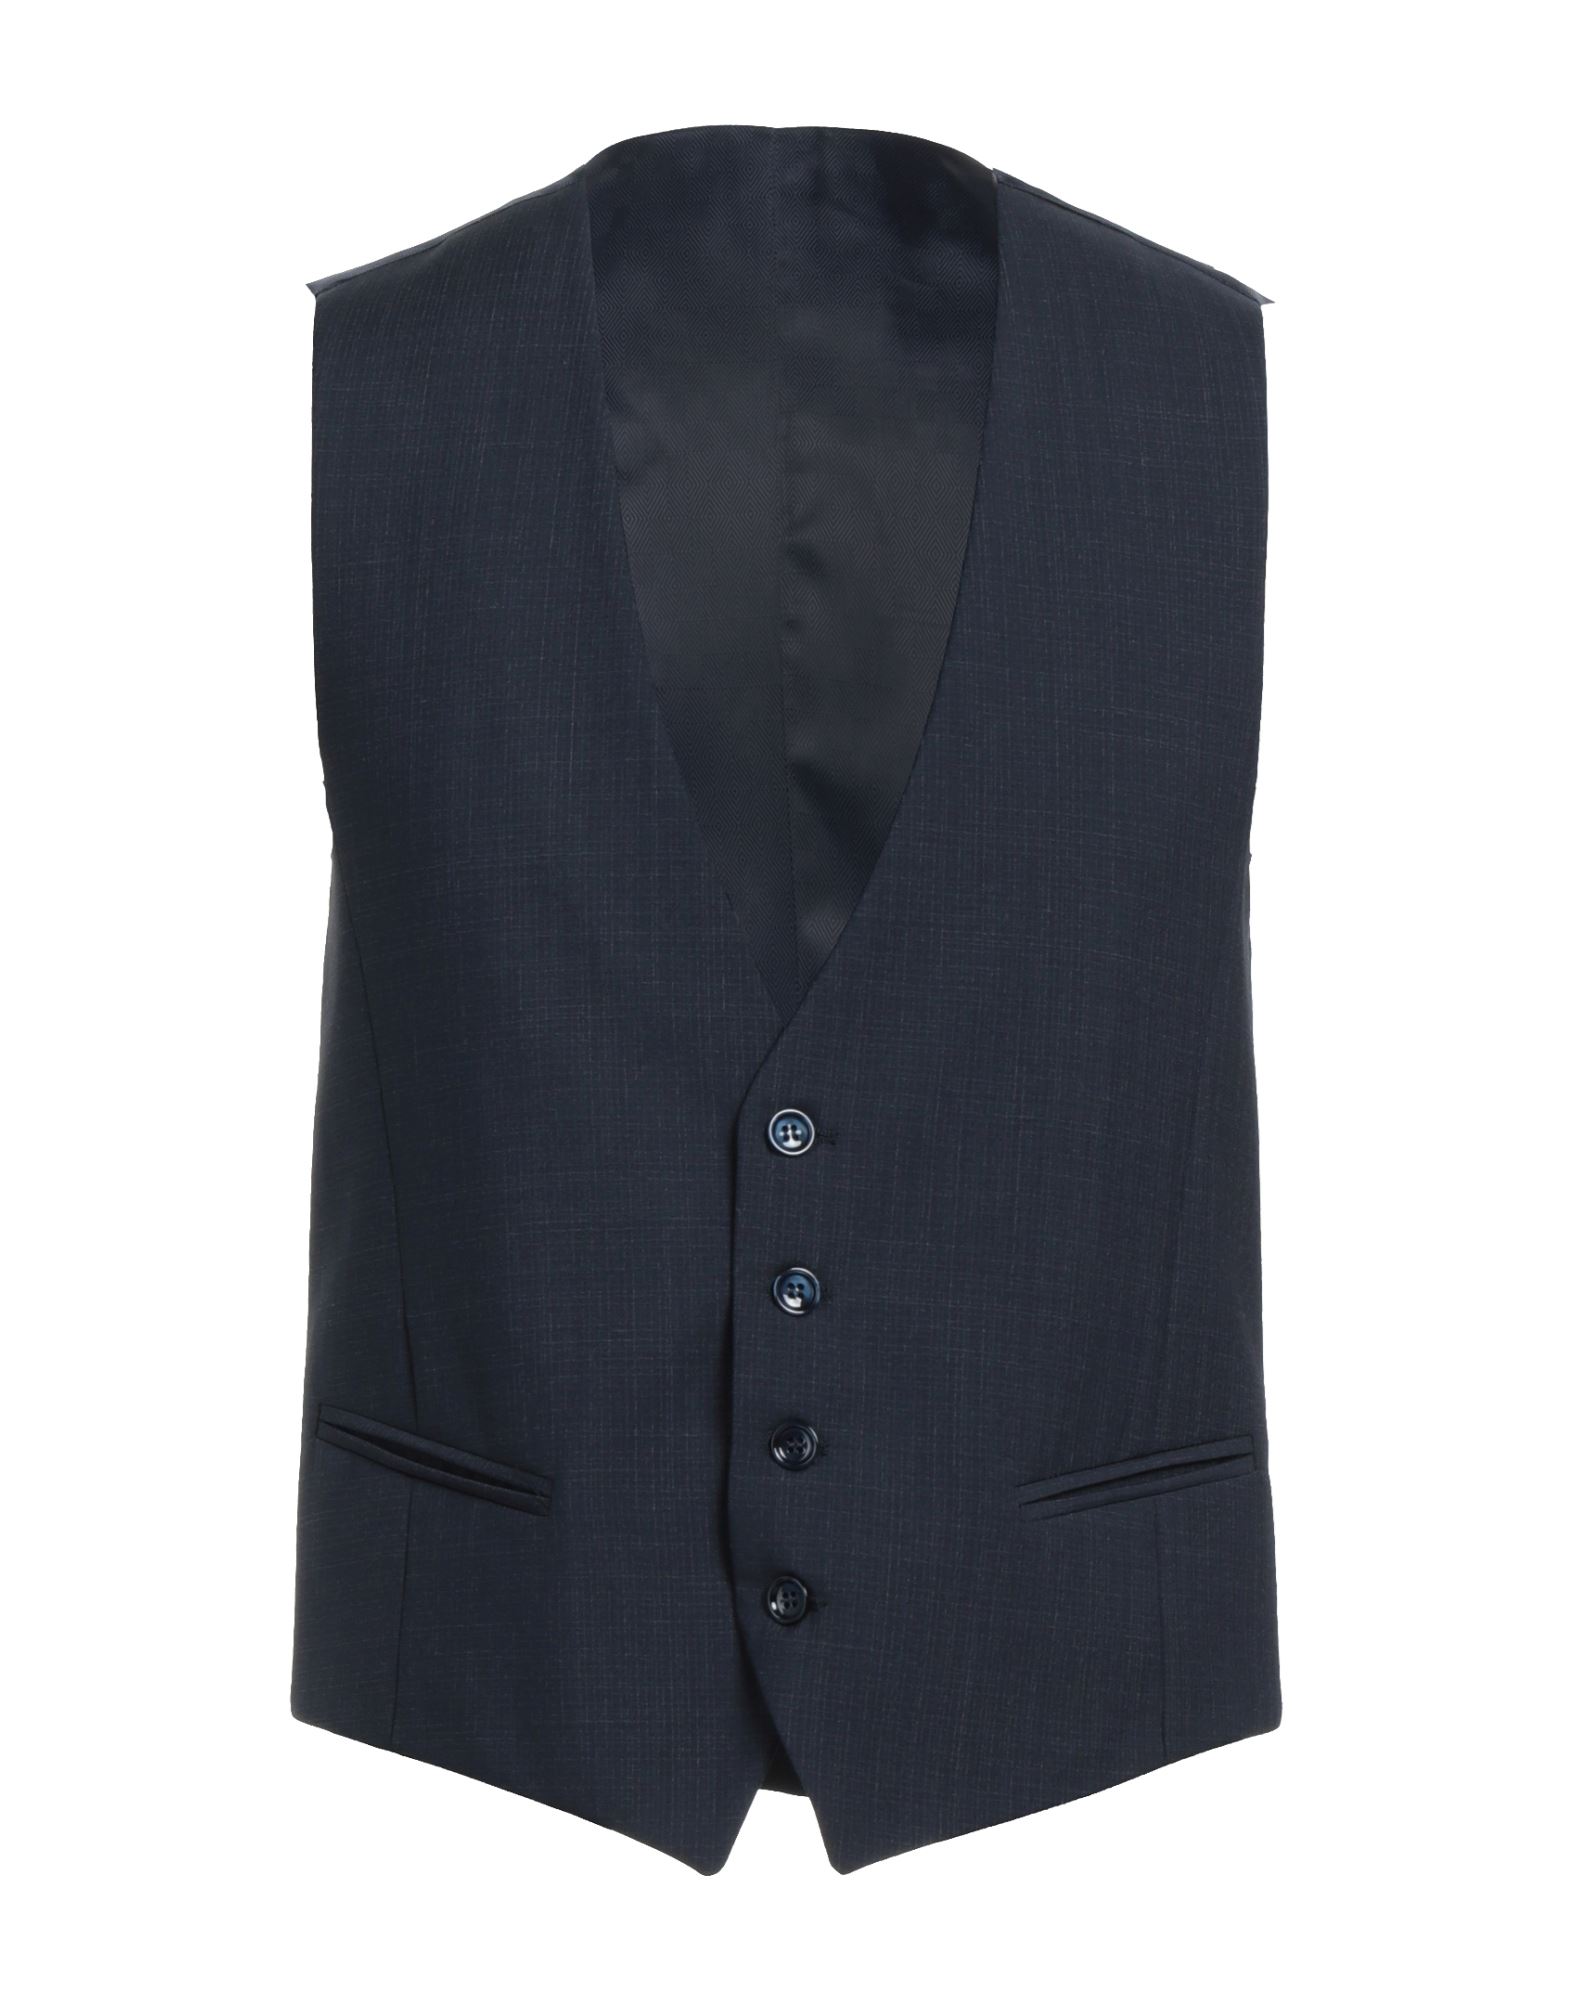 Havana & Co. Man Tailored Vest Midnight Blue Size 42 Virgin Wool